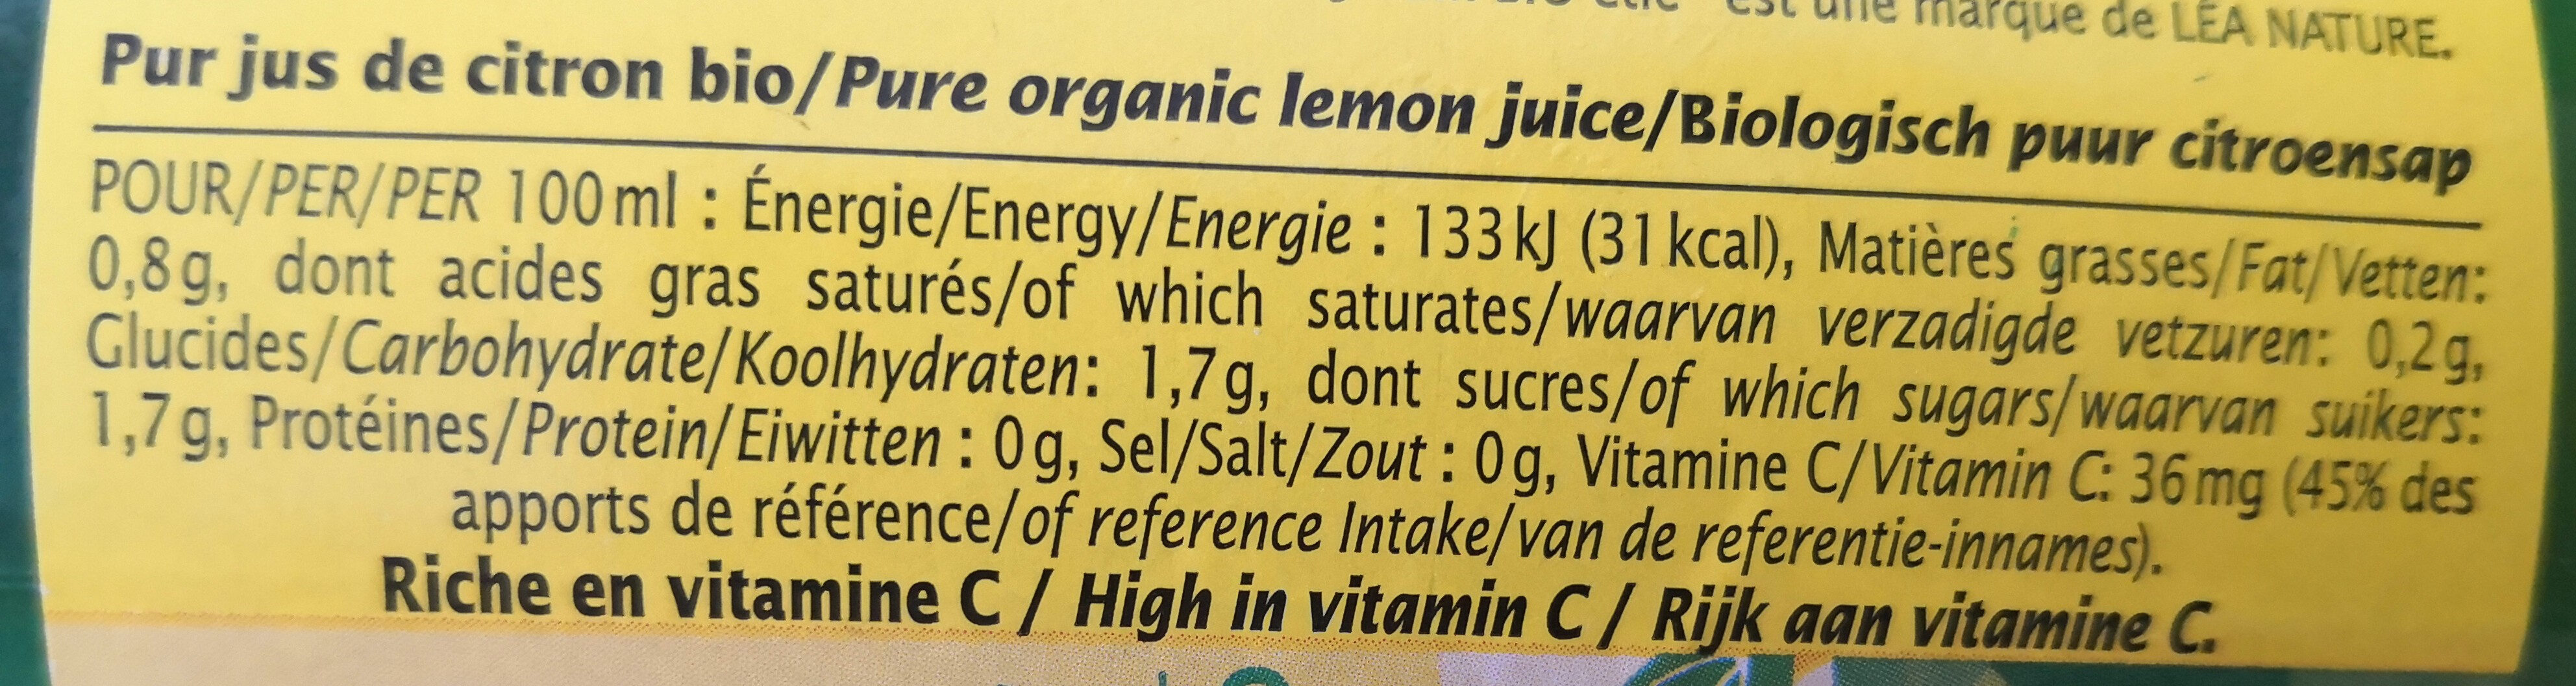 Pur jus de citron bio - Ingrédients